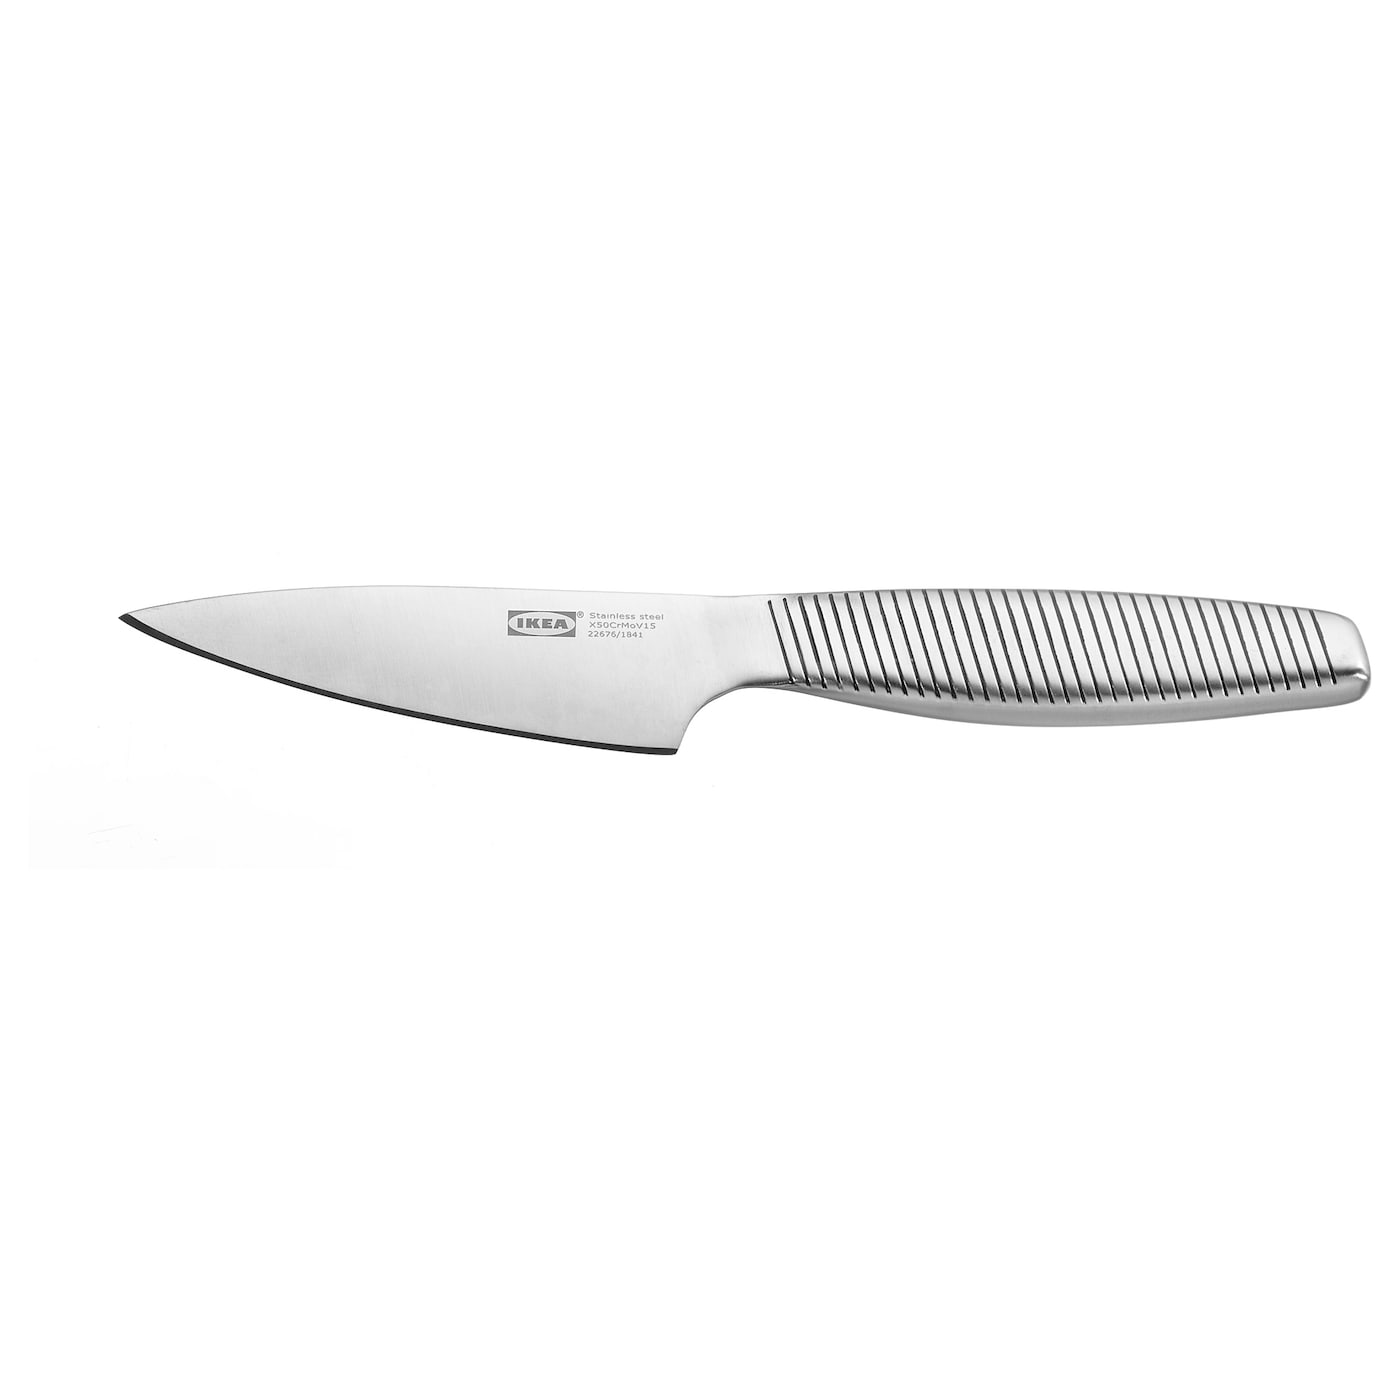 IKEA 365+ ИКЕА/365+ Нож для чистки овощ/фрукт, нержавеющ сталь, 9 см IKEA цветной безопасный детский кухонный нож нейлоновые ножи шеф повара ножи для фруктов хлеба торта салата салат ножи пластиковый кухонны